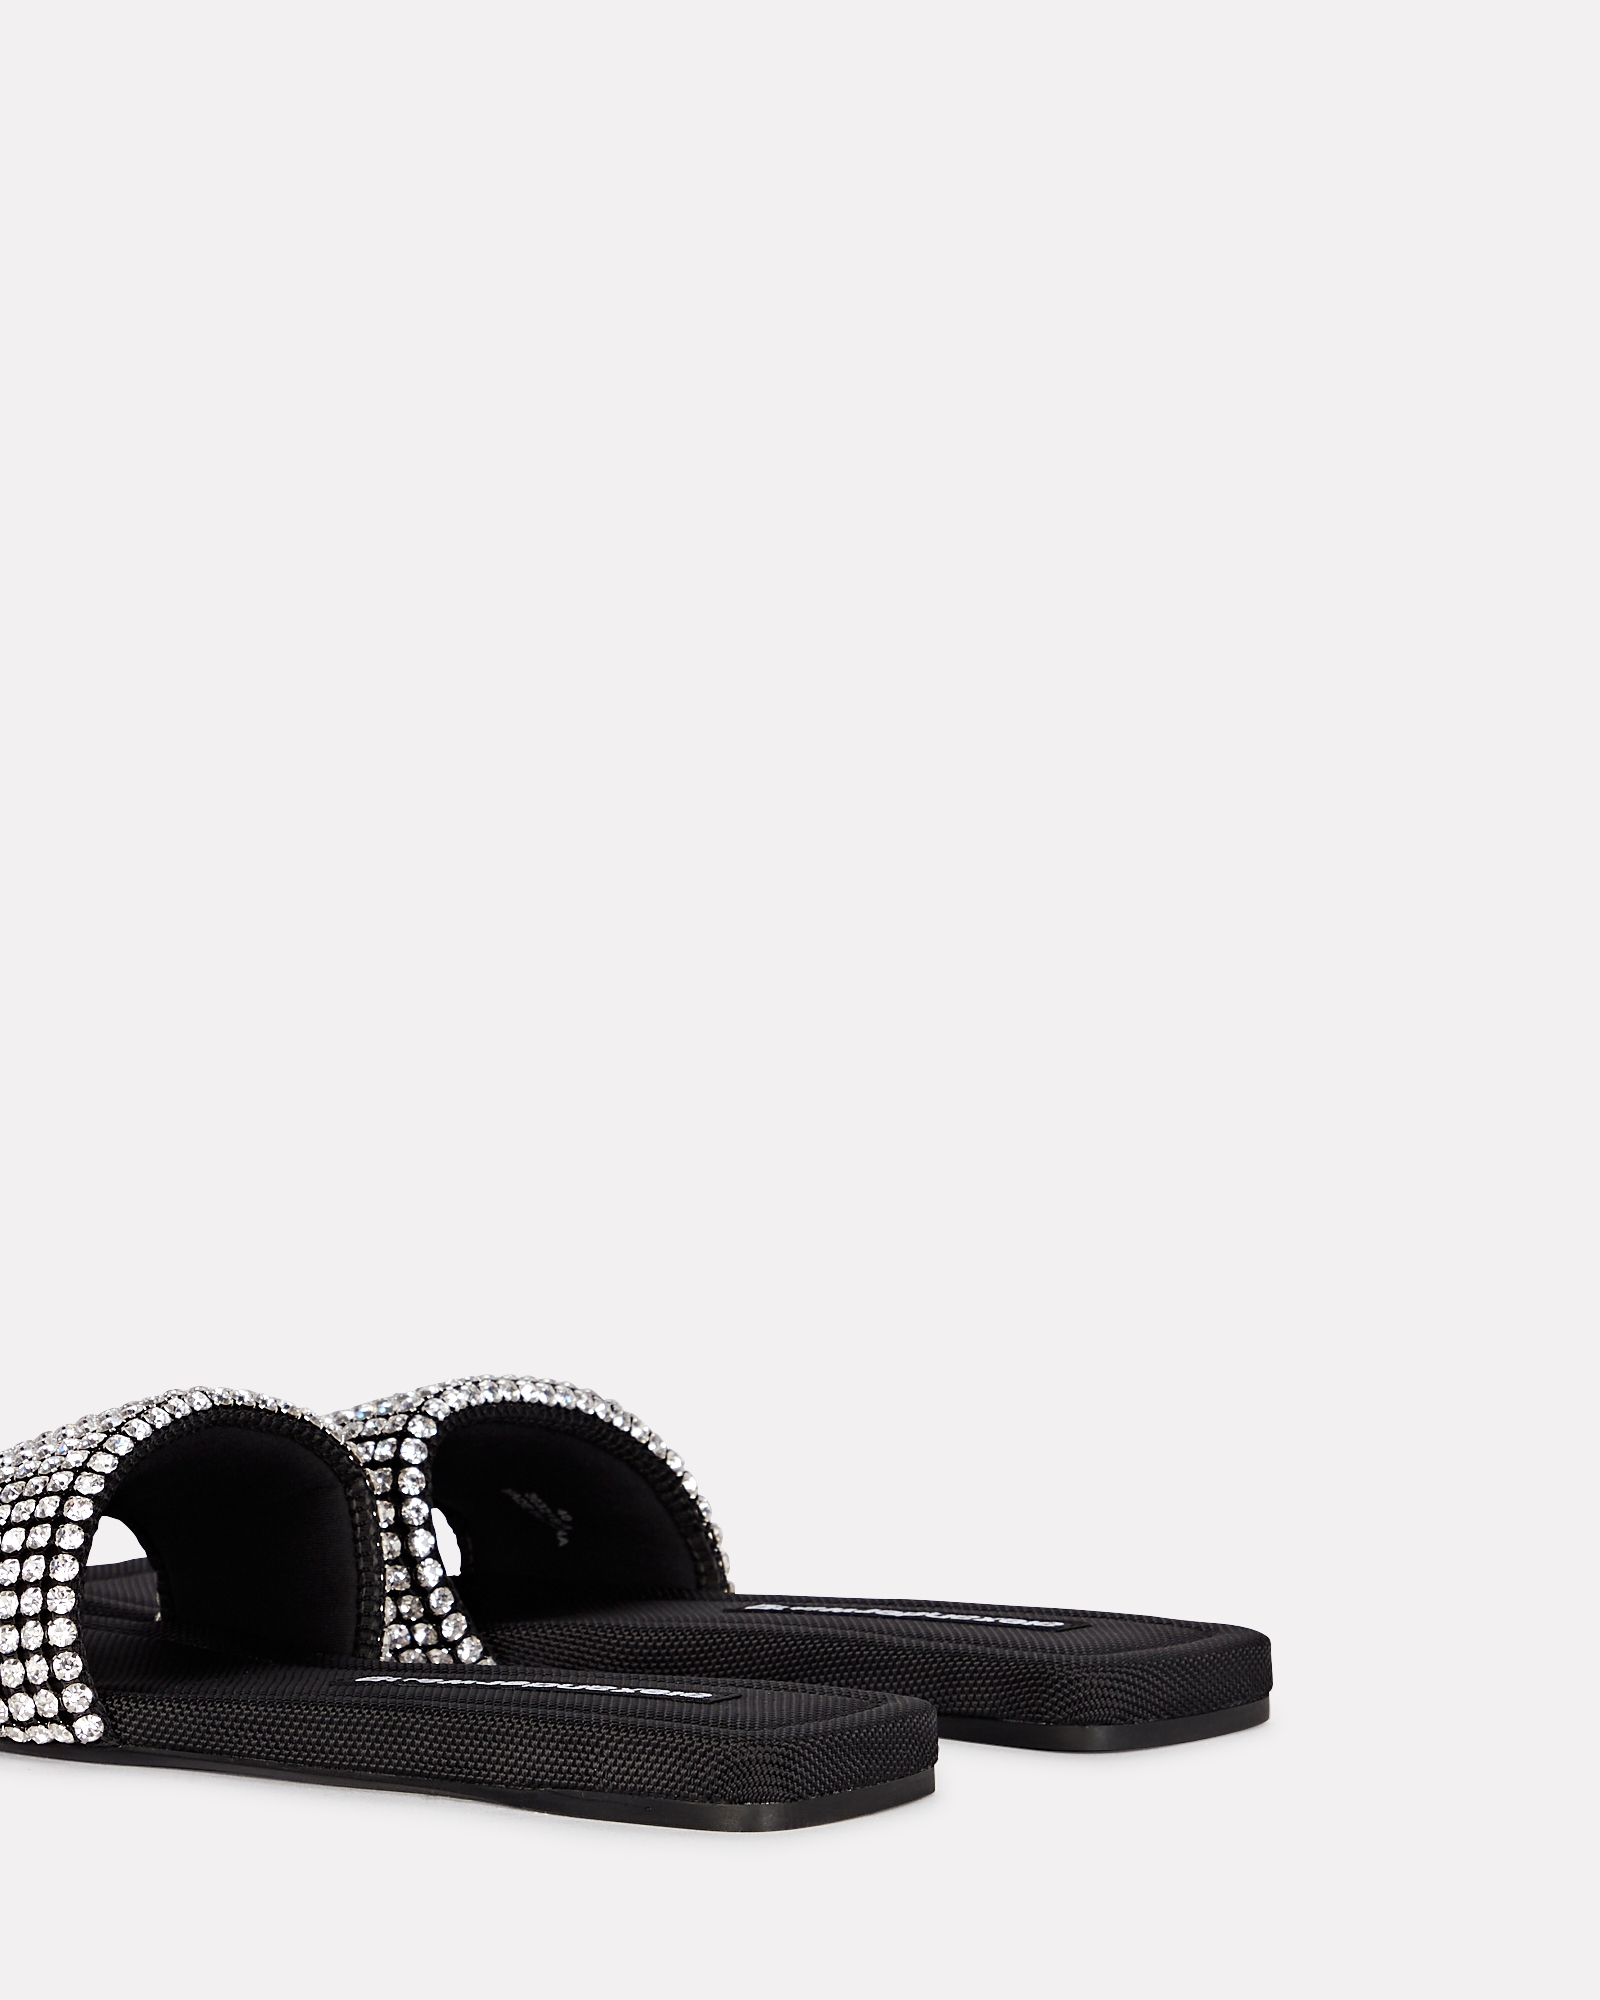 Alexander Wang Anya Crystal-Embellished Slide Sandals | INTERMIX®